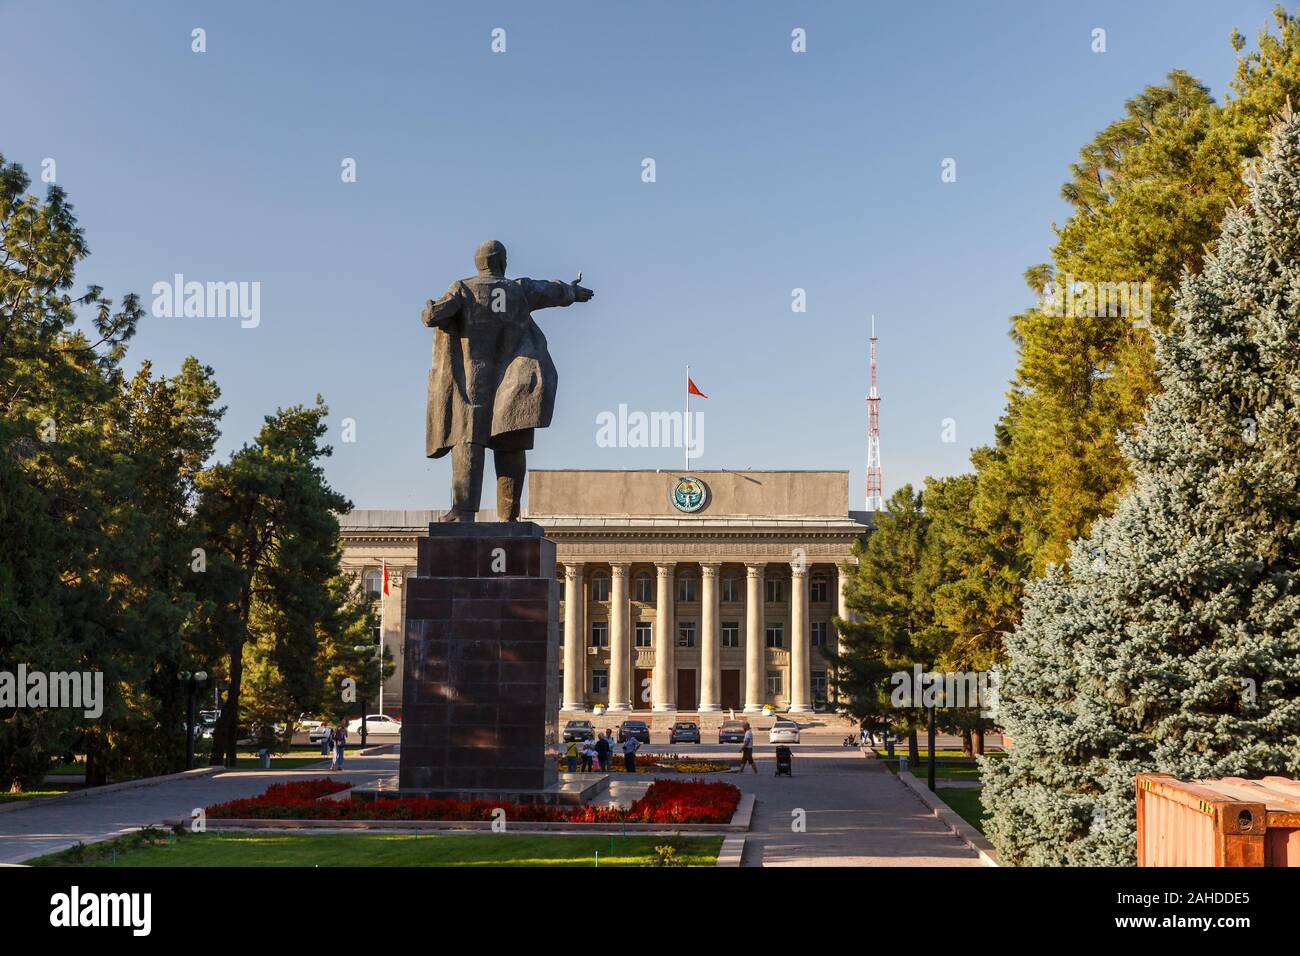 Bishkek, Kyrgyzstan - September 18, 2019: Monument to Lenin in Bishkek. Stock Photo